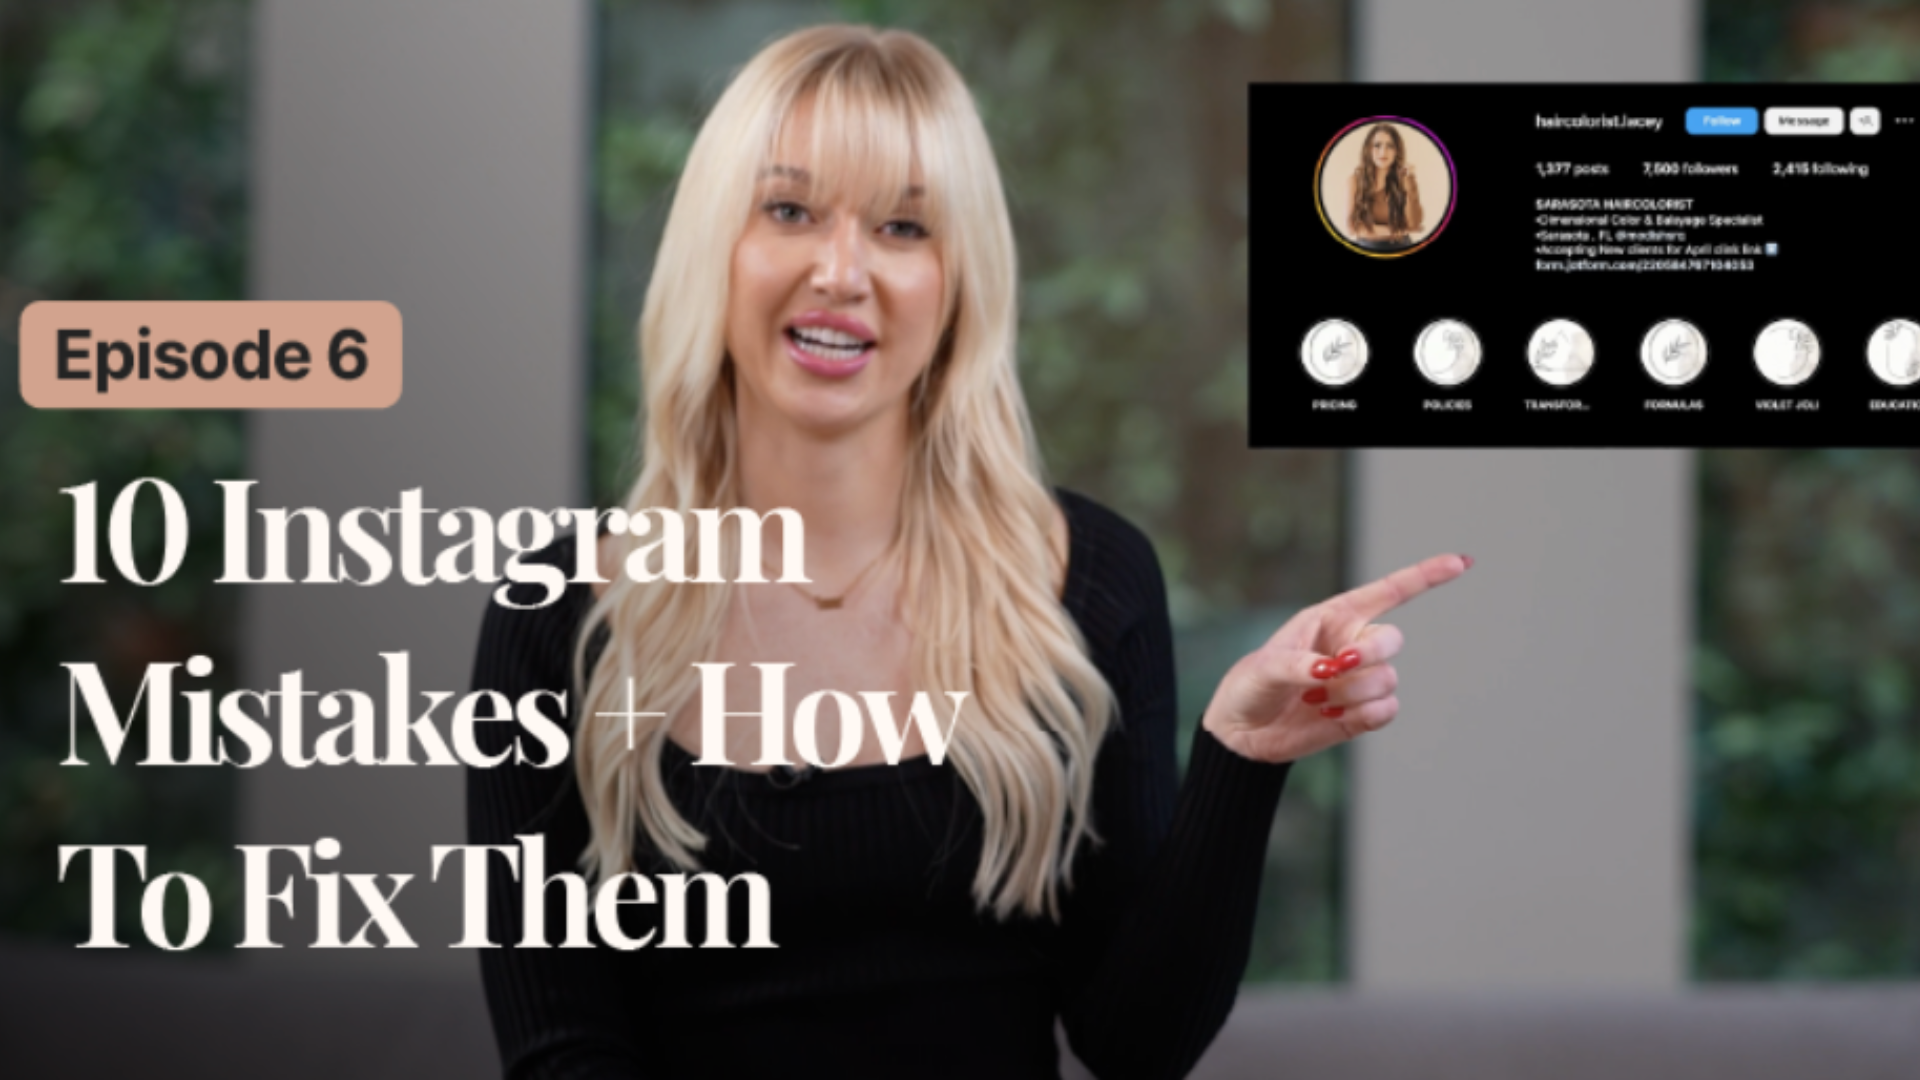 10 Instagram Mistakes + How To Fix Them